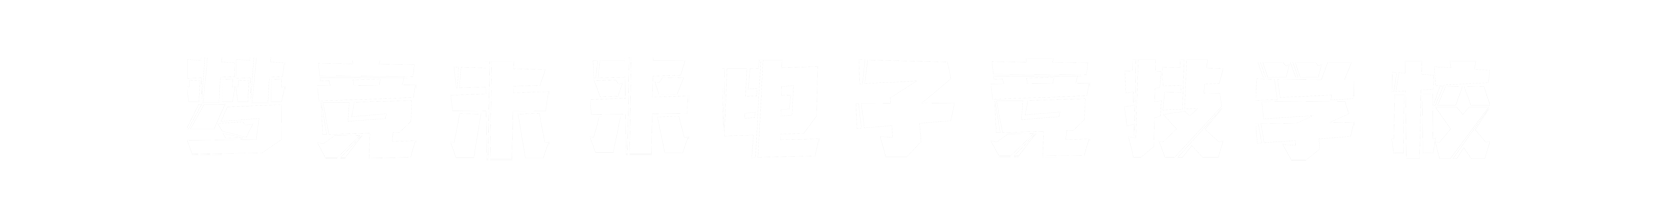 梦竞未来甘肃banner字